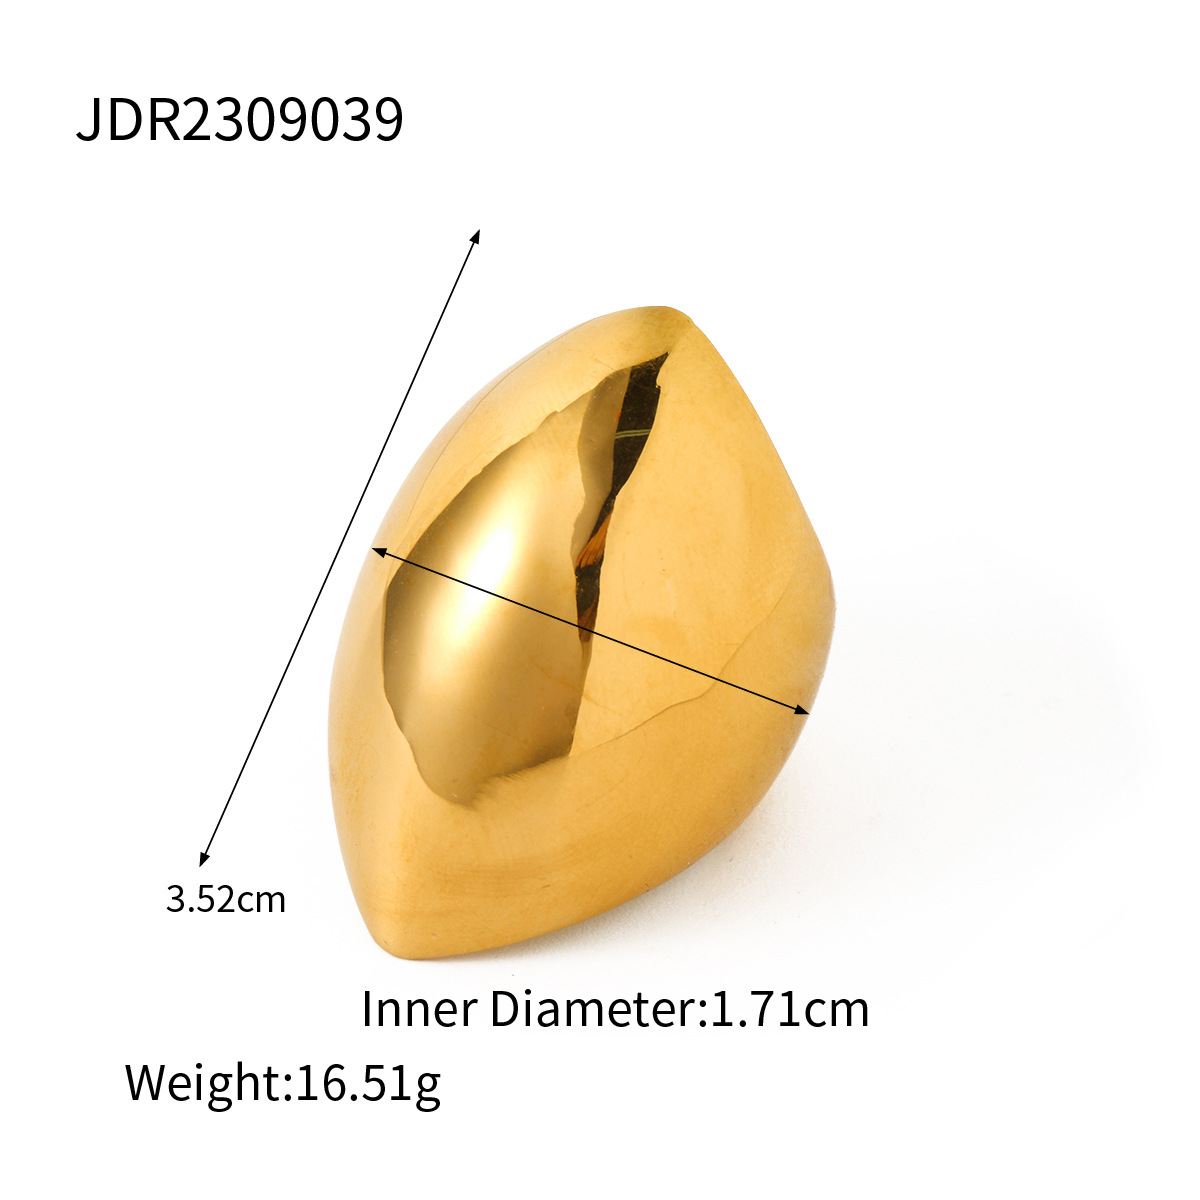 JDR2309039 US Size #6